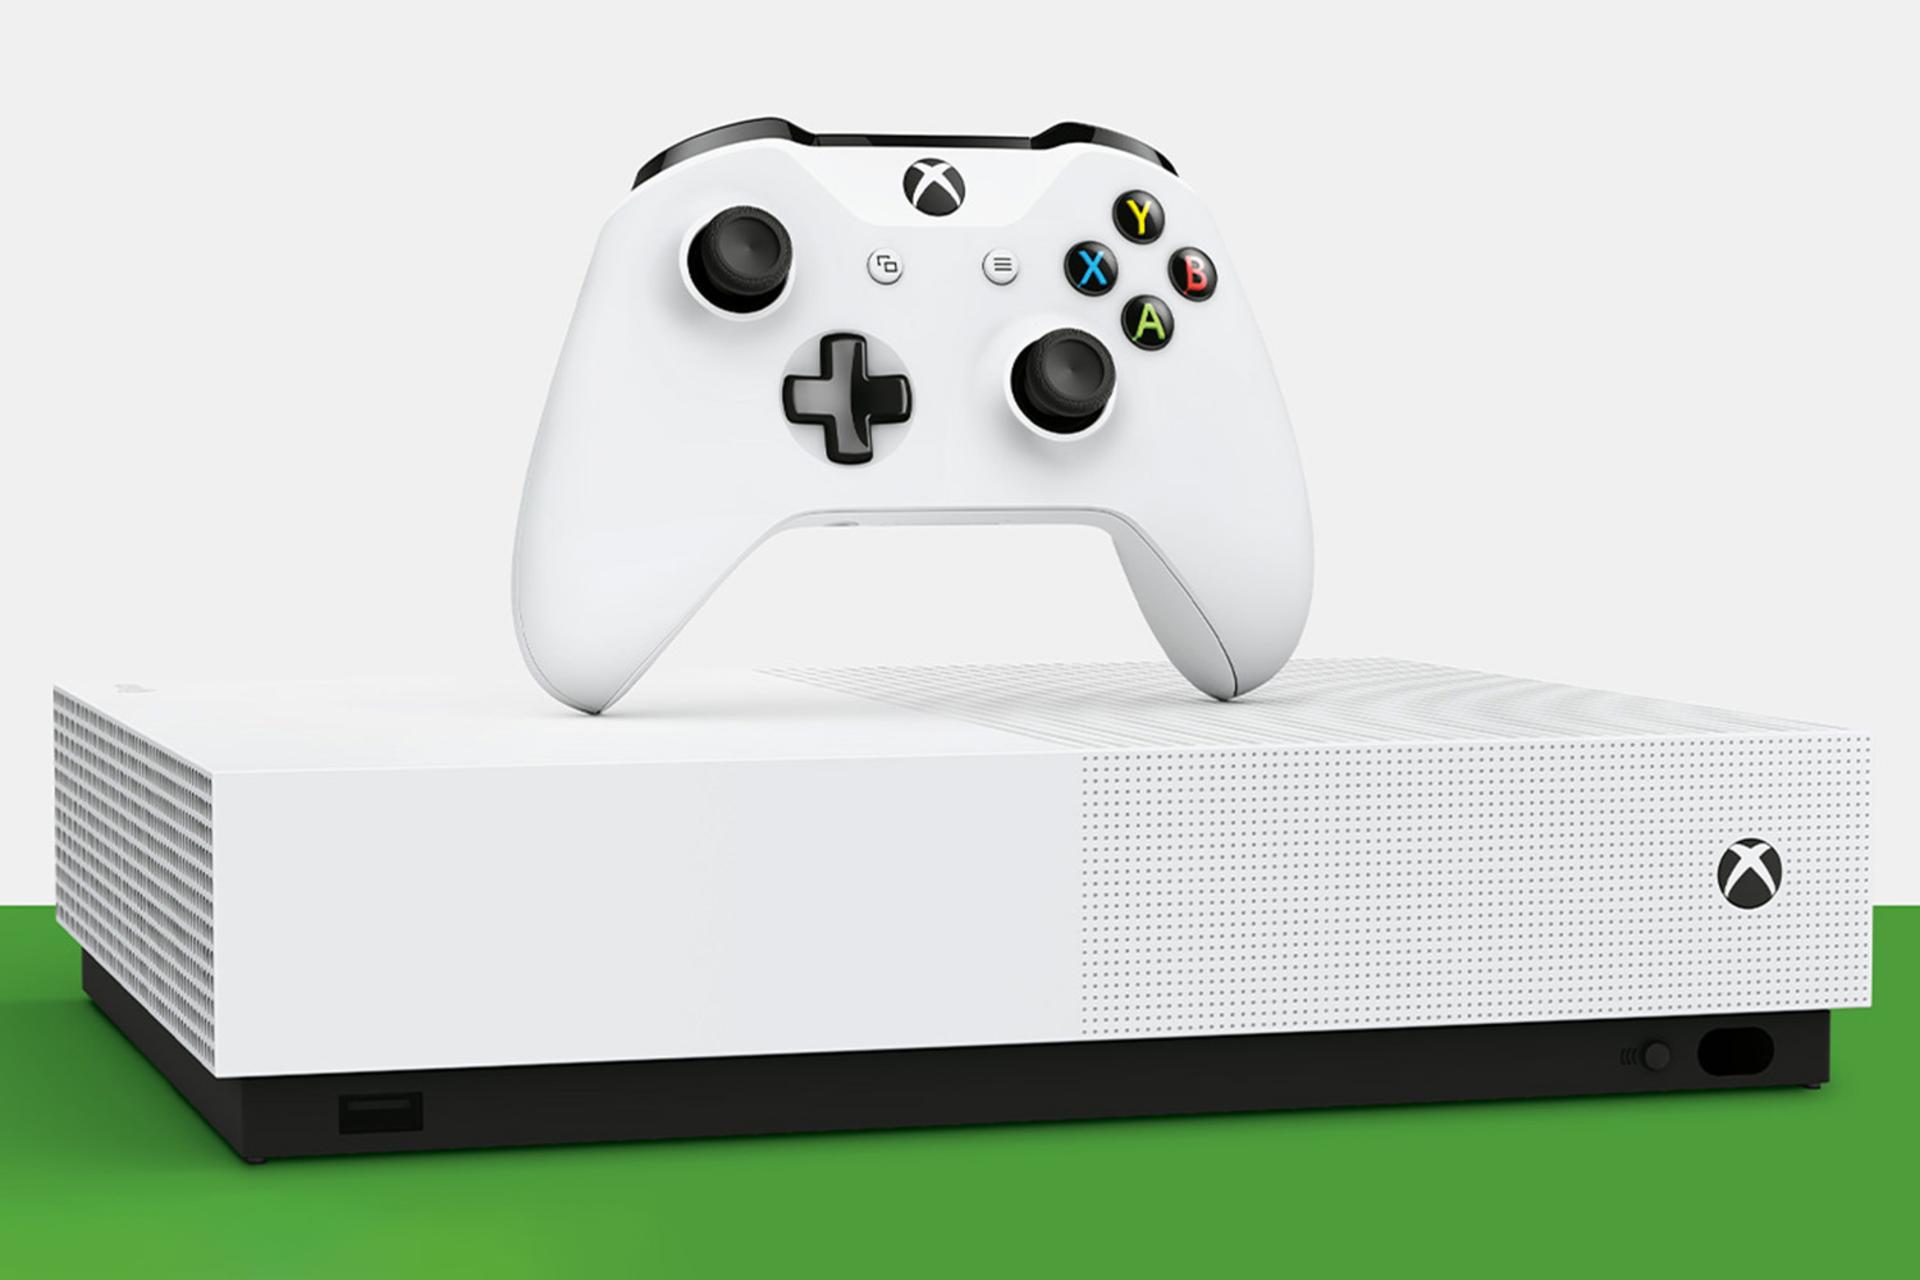 کنسول مایکروسافت ایکس باکس وان اس مدل دیجیتال - نمای جلو و رنگ سفید با دسته / Xbox One S